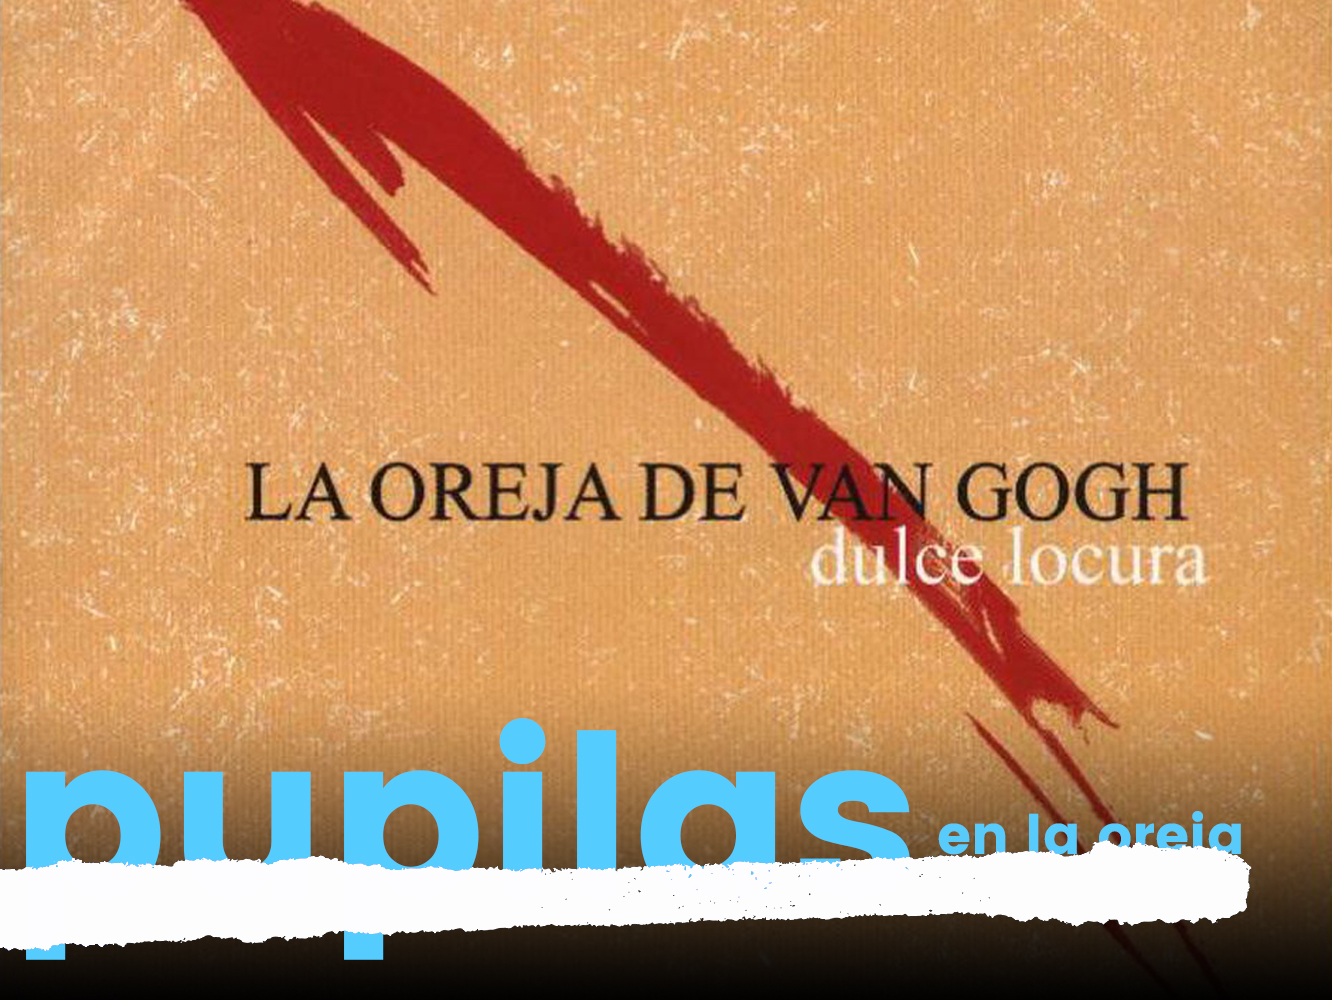  Pupilas En La Oreja | ‘Dulce Locura’, La Oreja De Van Gogh, sin tu sol, pero con bien de luna